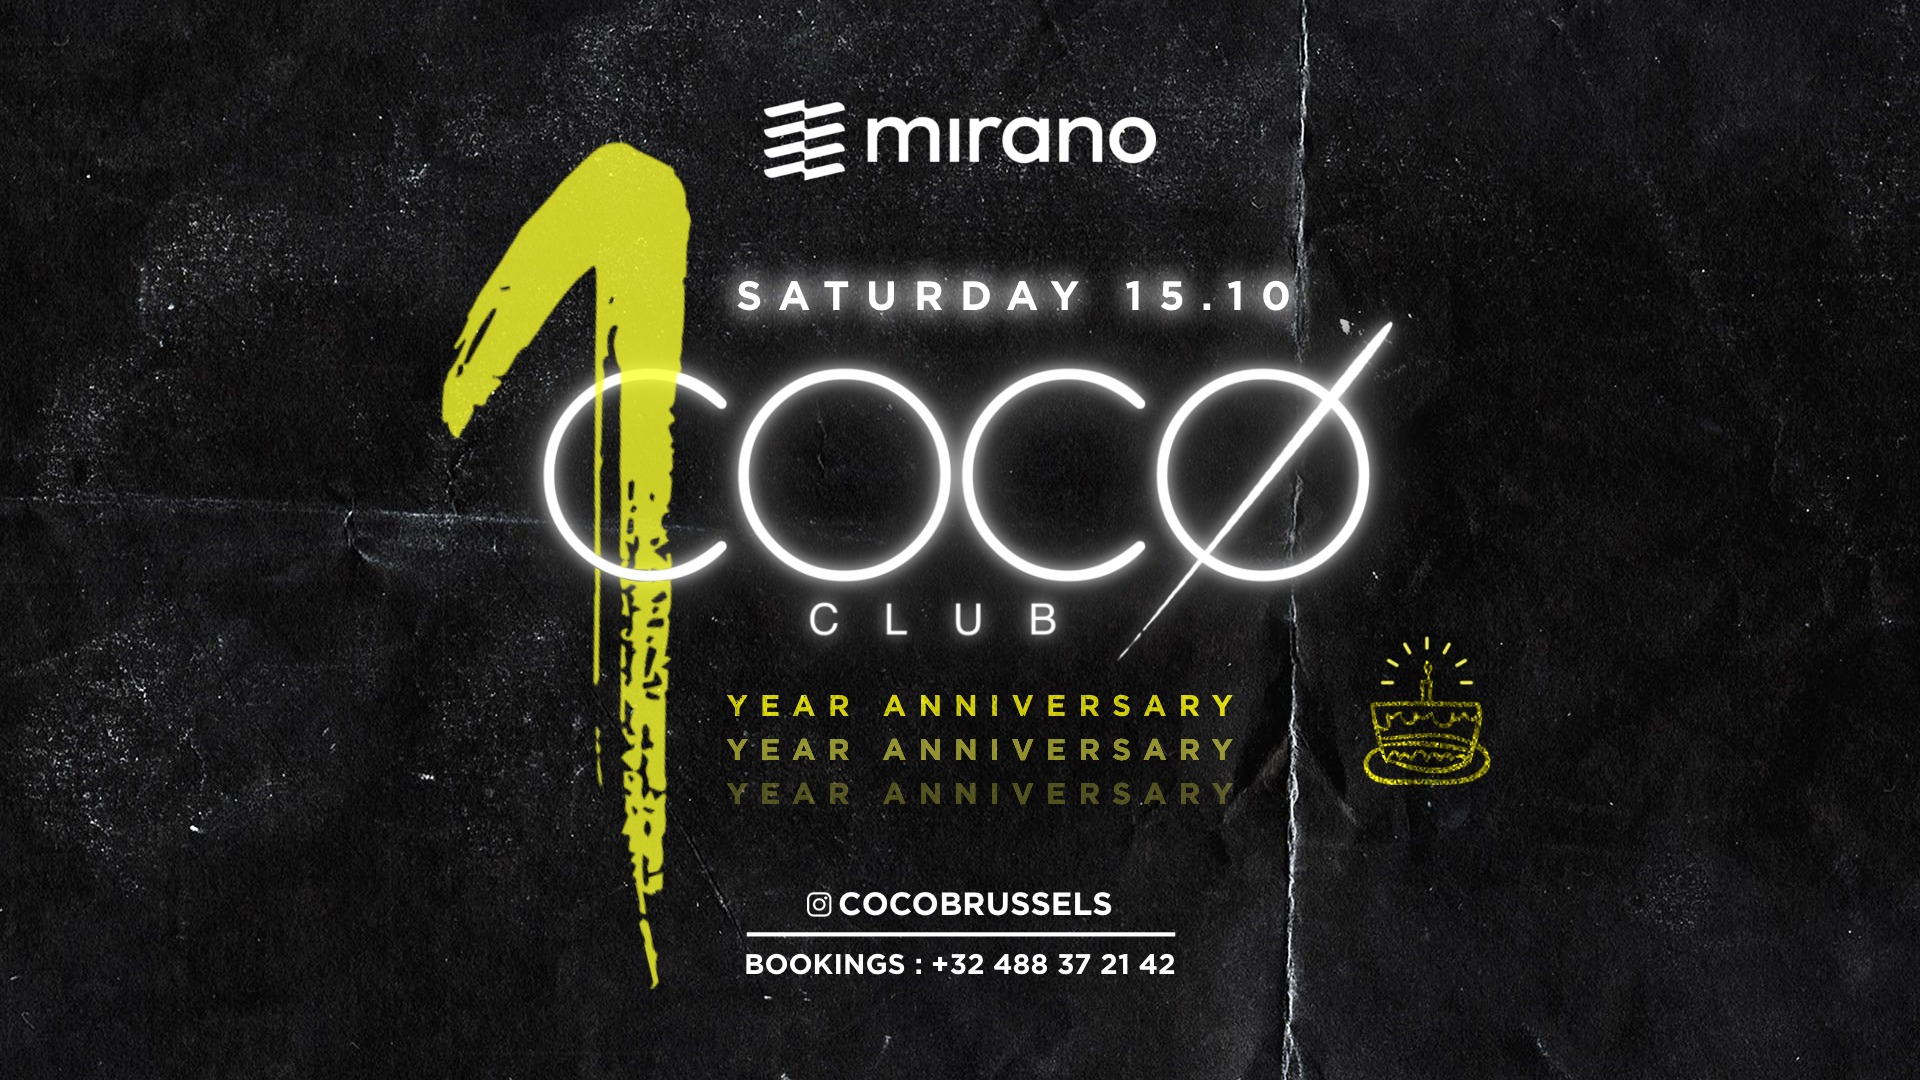 Coco Club x Mirano